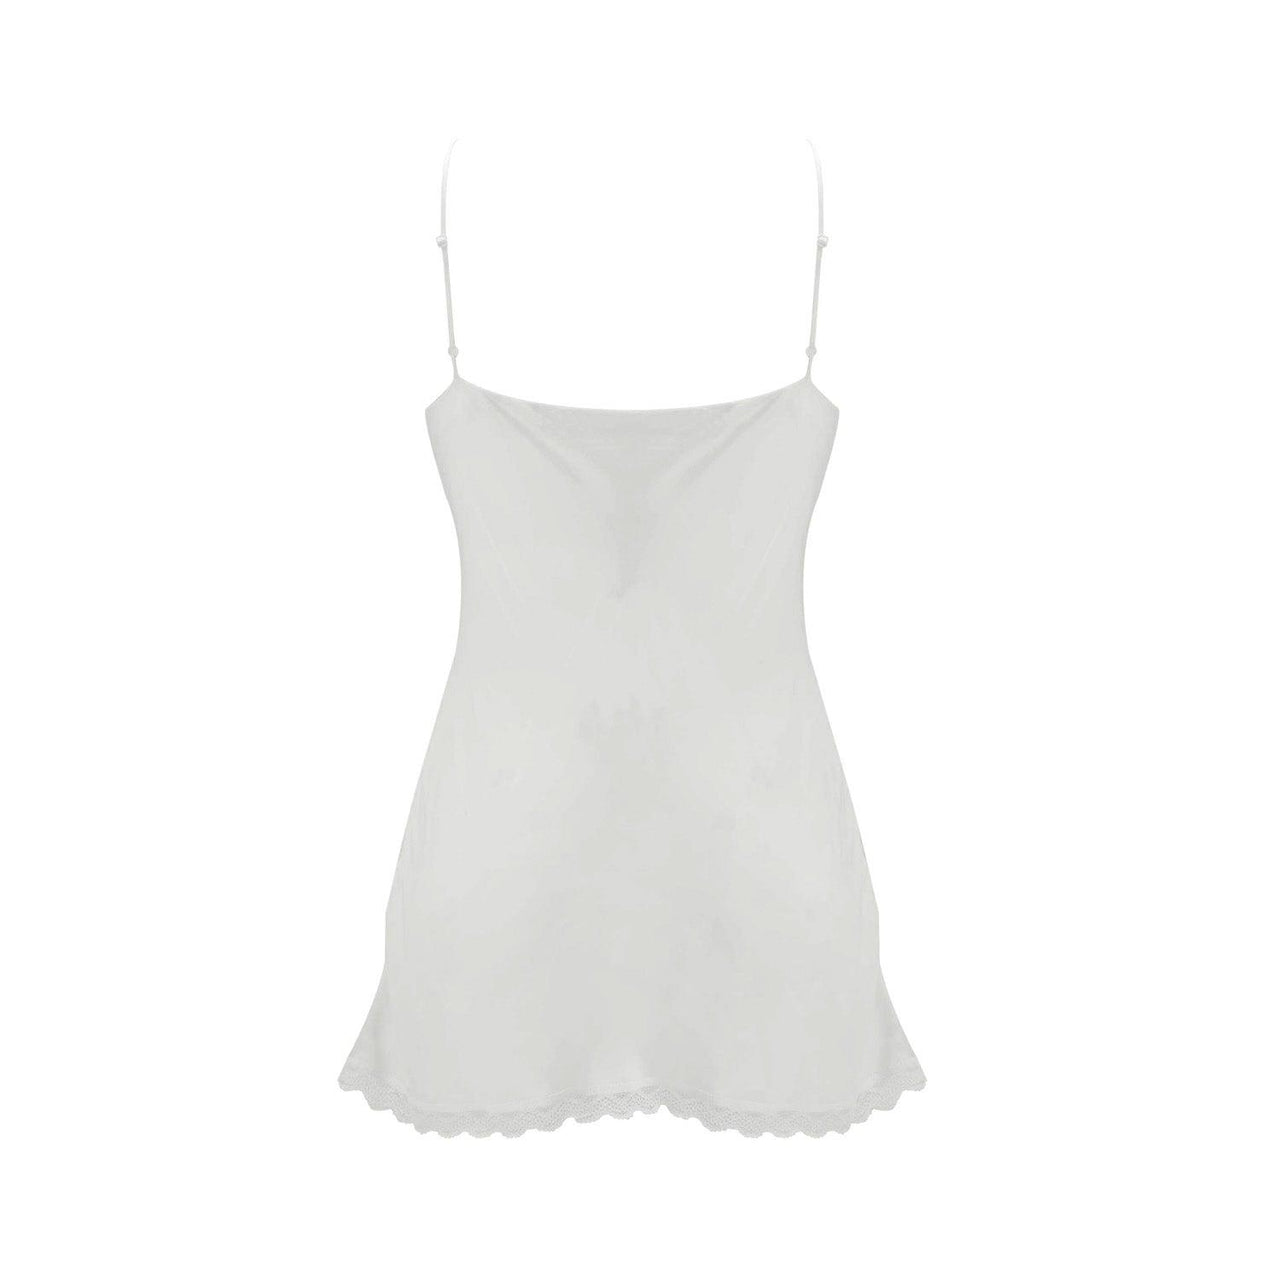 100% Pure Silk Camisole Top in White-6